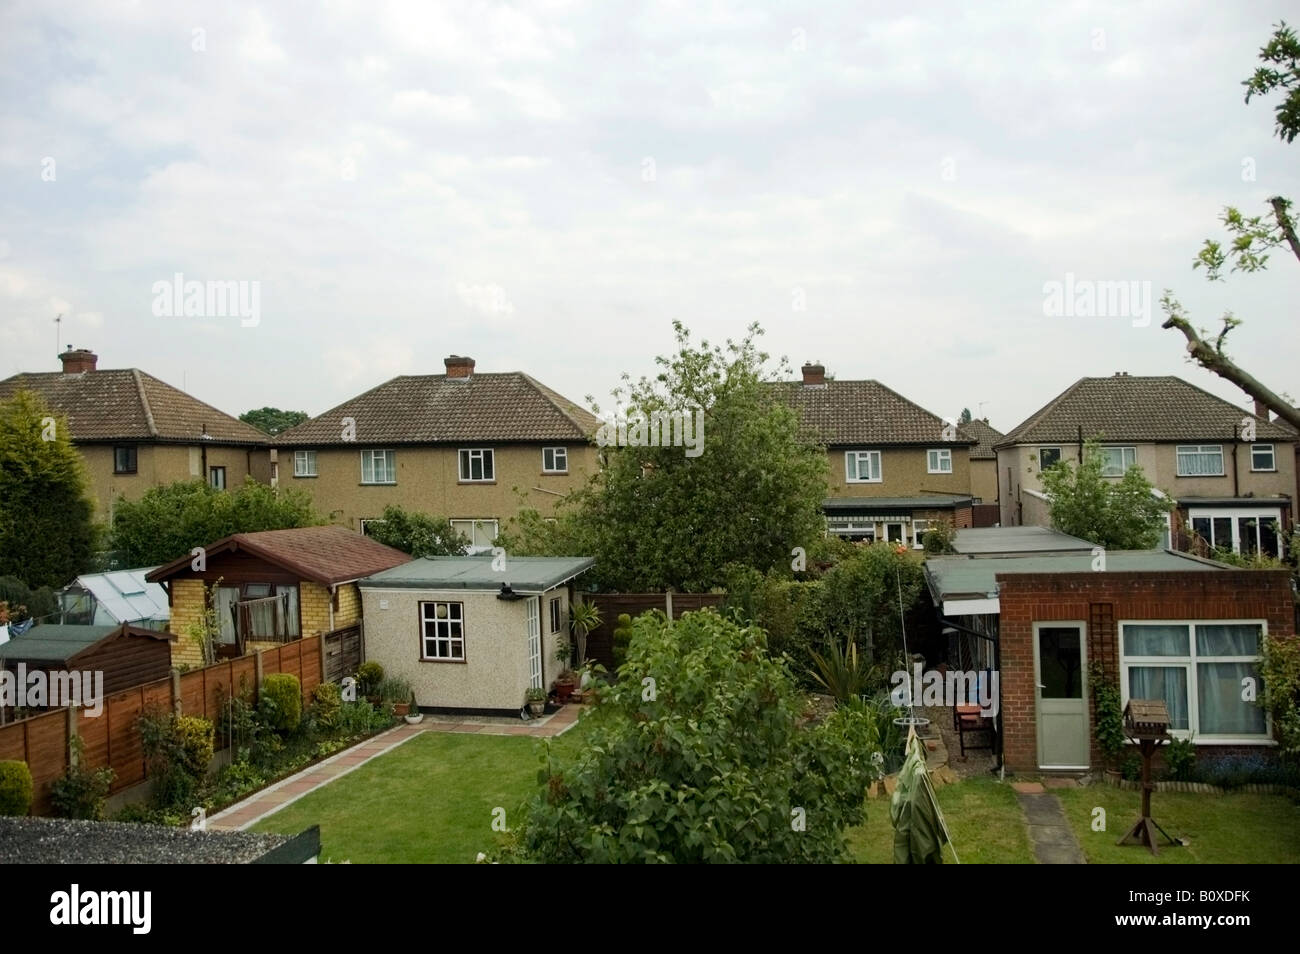 Arial giardini vista di 40s, 50s semi residenziale-case unifamiliari, Collier Row, Romford, Essex, Gran Bretagna, Regno Unito, Europa UE Foto Stock